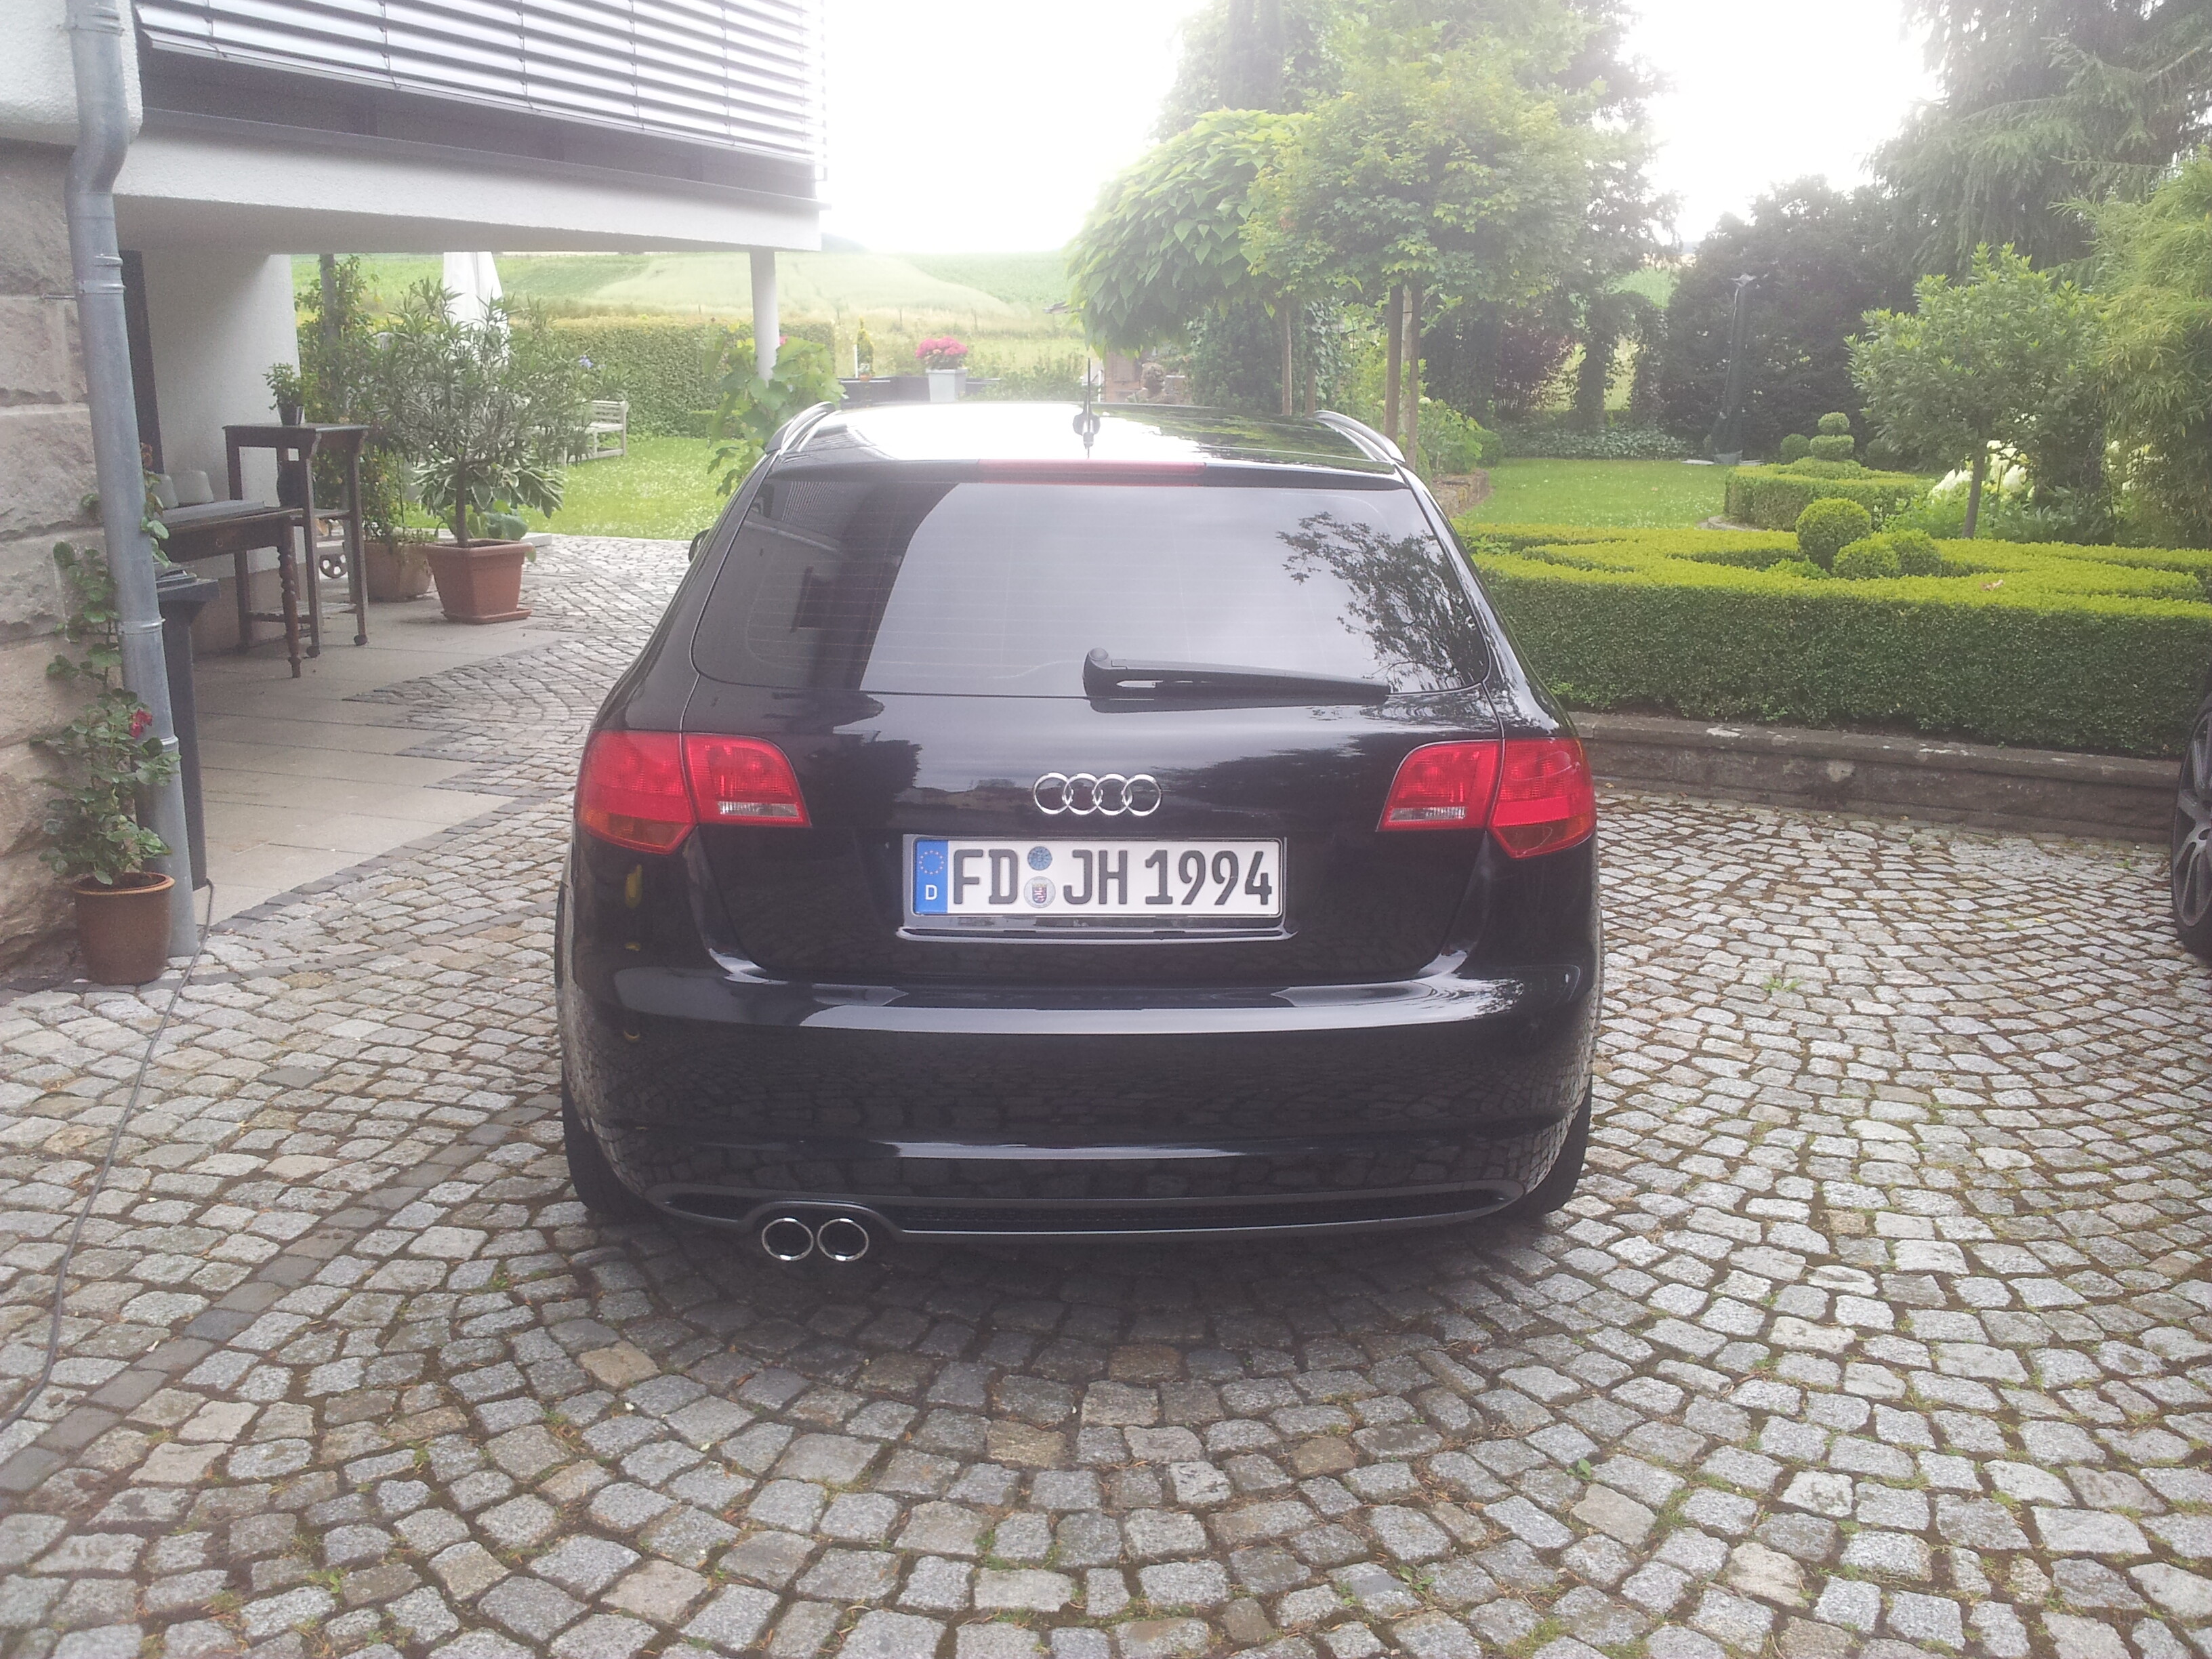 8P] Audi A3 2.0 TDI Auspuffblende - Allgemeine Fragen (8P) - A3-Freunde